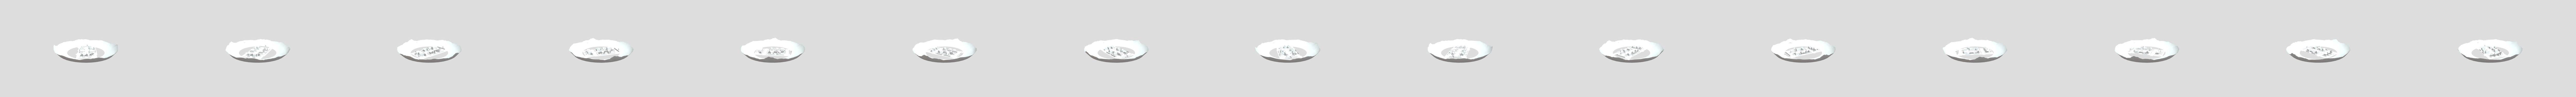 Ice Scream 5: Rod Lore - Download Free 3D model by EWTube0 (@EWTube0)  [7623e64]